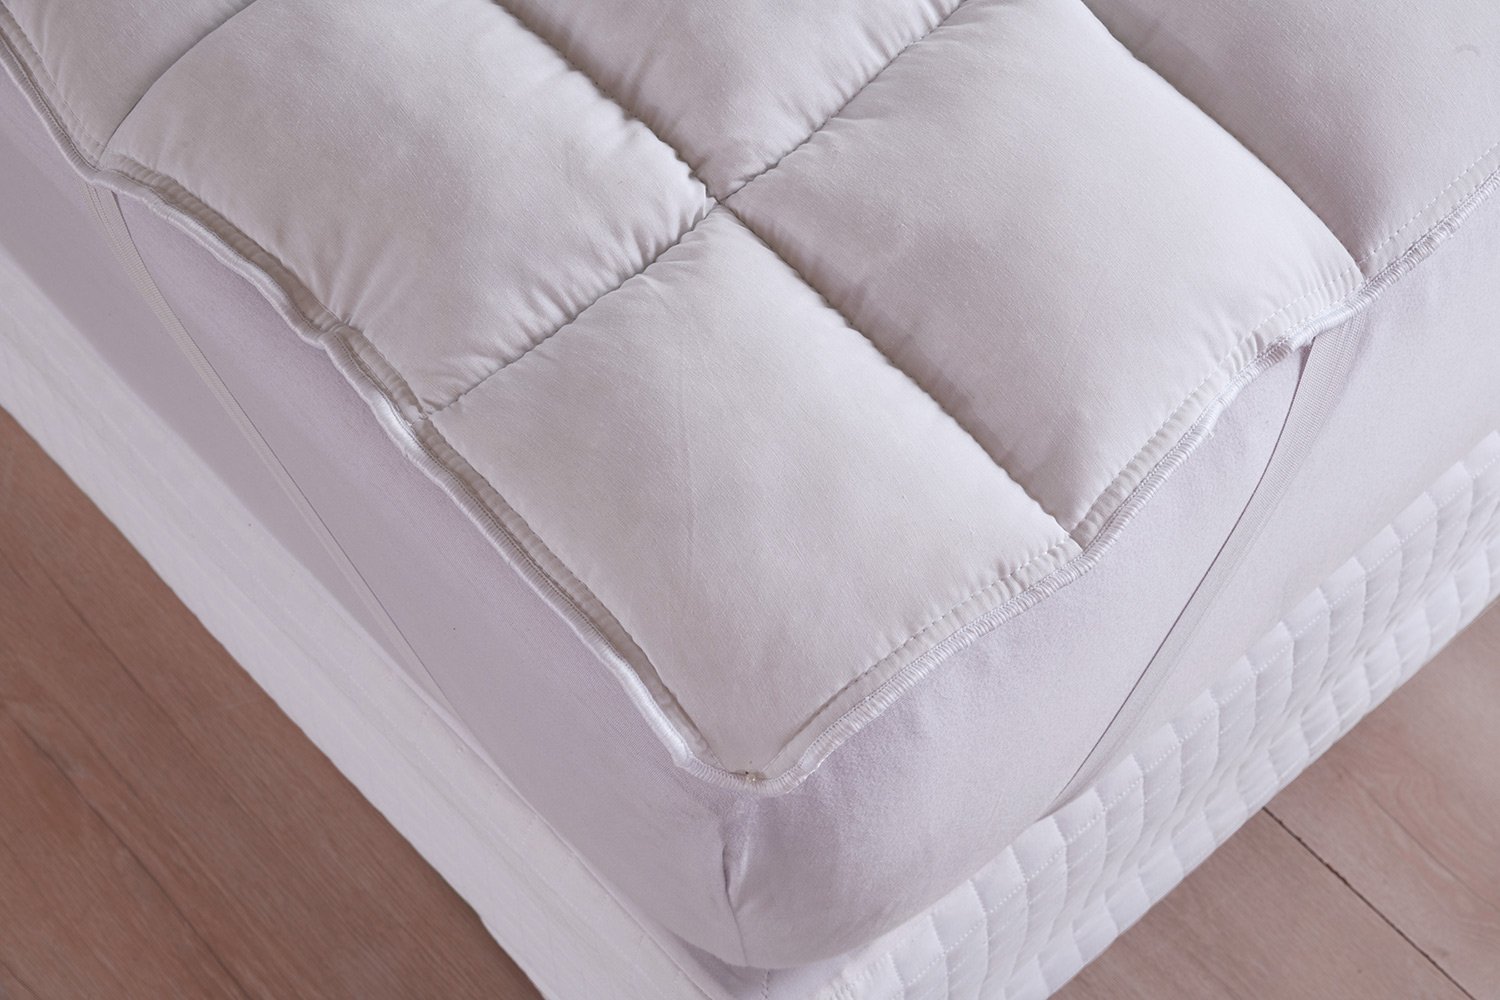 Pillow Top Casal Fibra Siliconizada em Flocos Branco - 138x188cm - 4